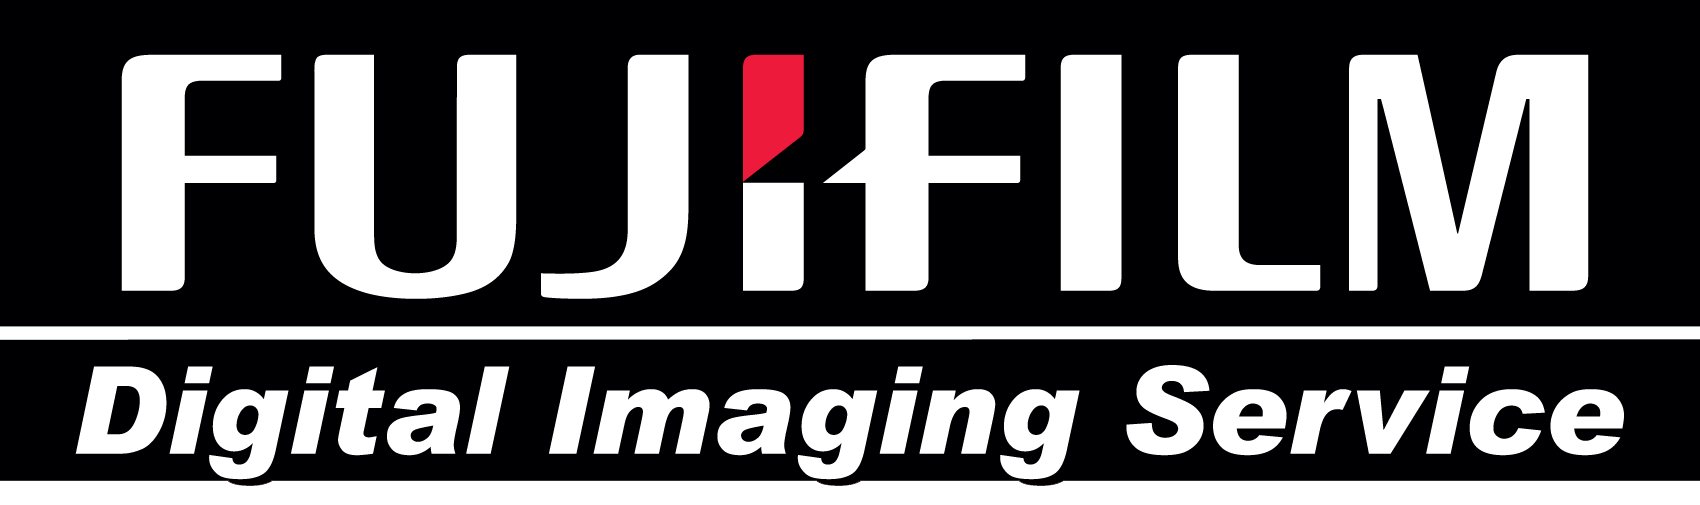 Fuji Logo - Fujifilm Logos